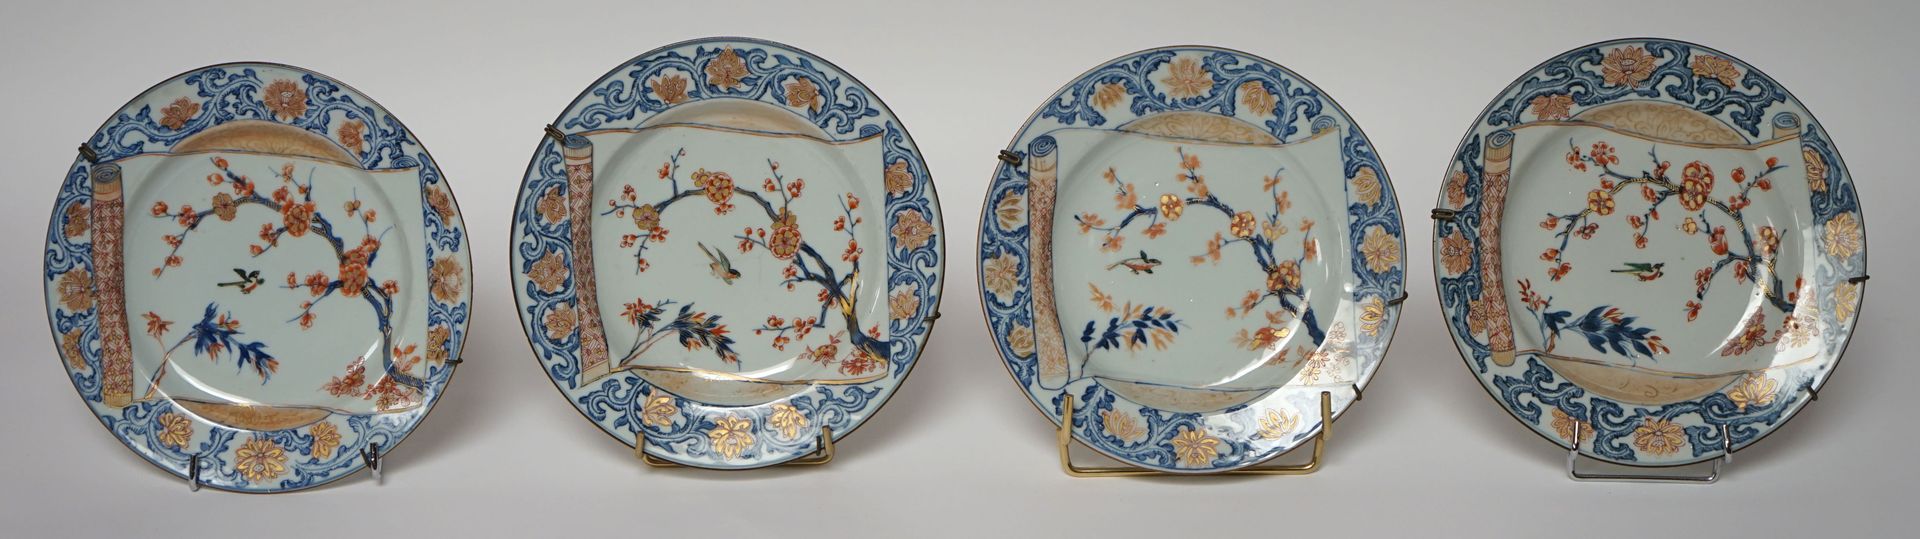 Null 日本，19世纪。一套四件伊万里瓷器，用蓝色、红色和金色装饰的花枝法器，翼上装饰有卷轴。(明星)。D. 22厘米